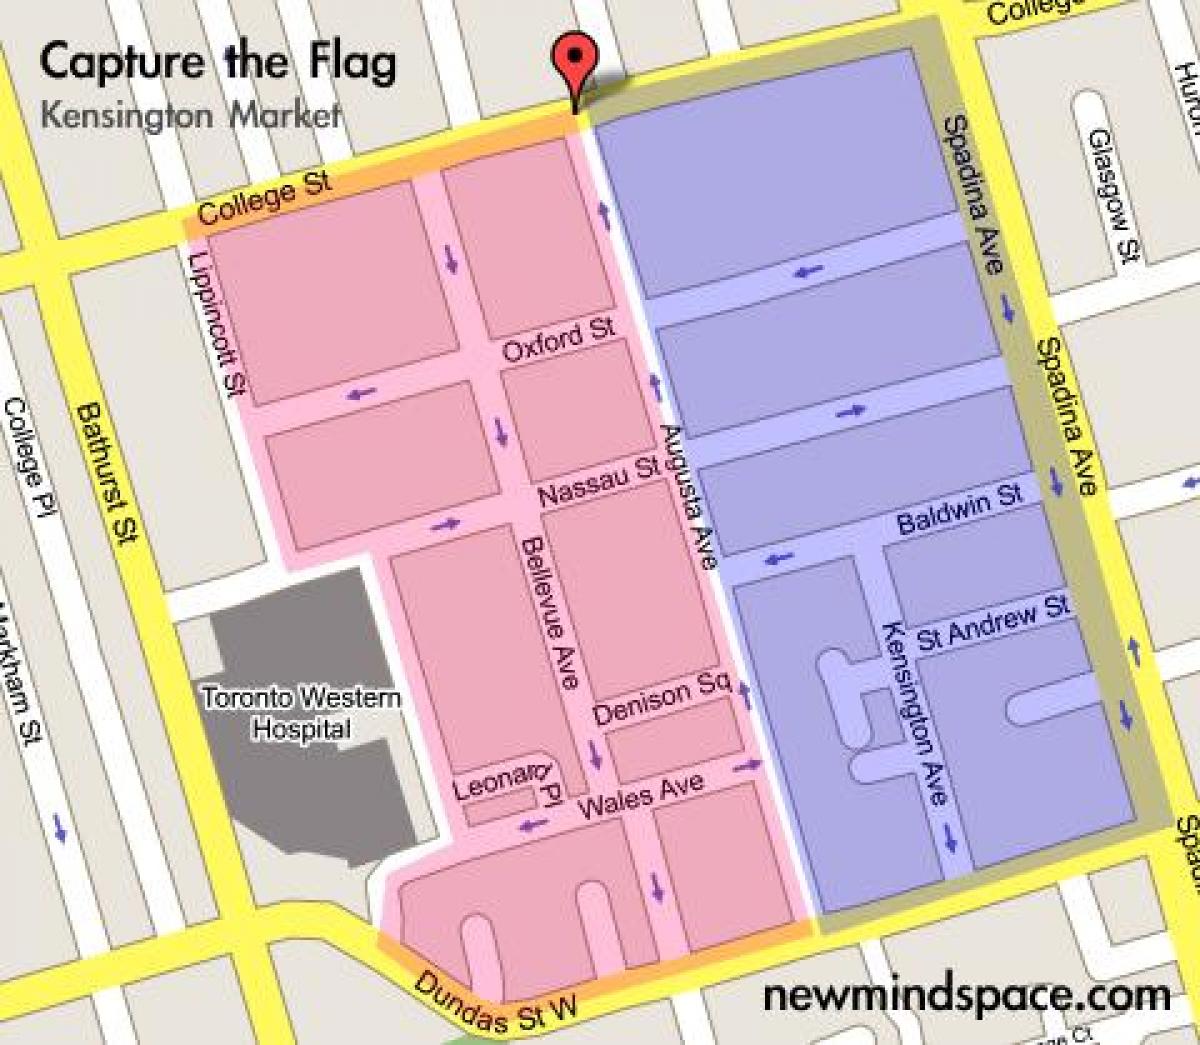 Harta e Kensington Tregut Toronto Qytetit